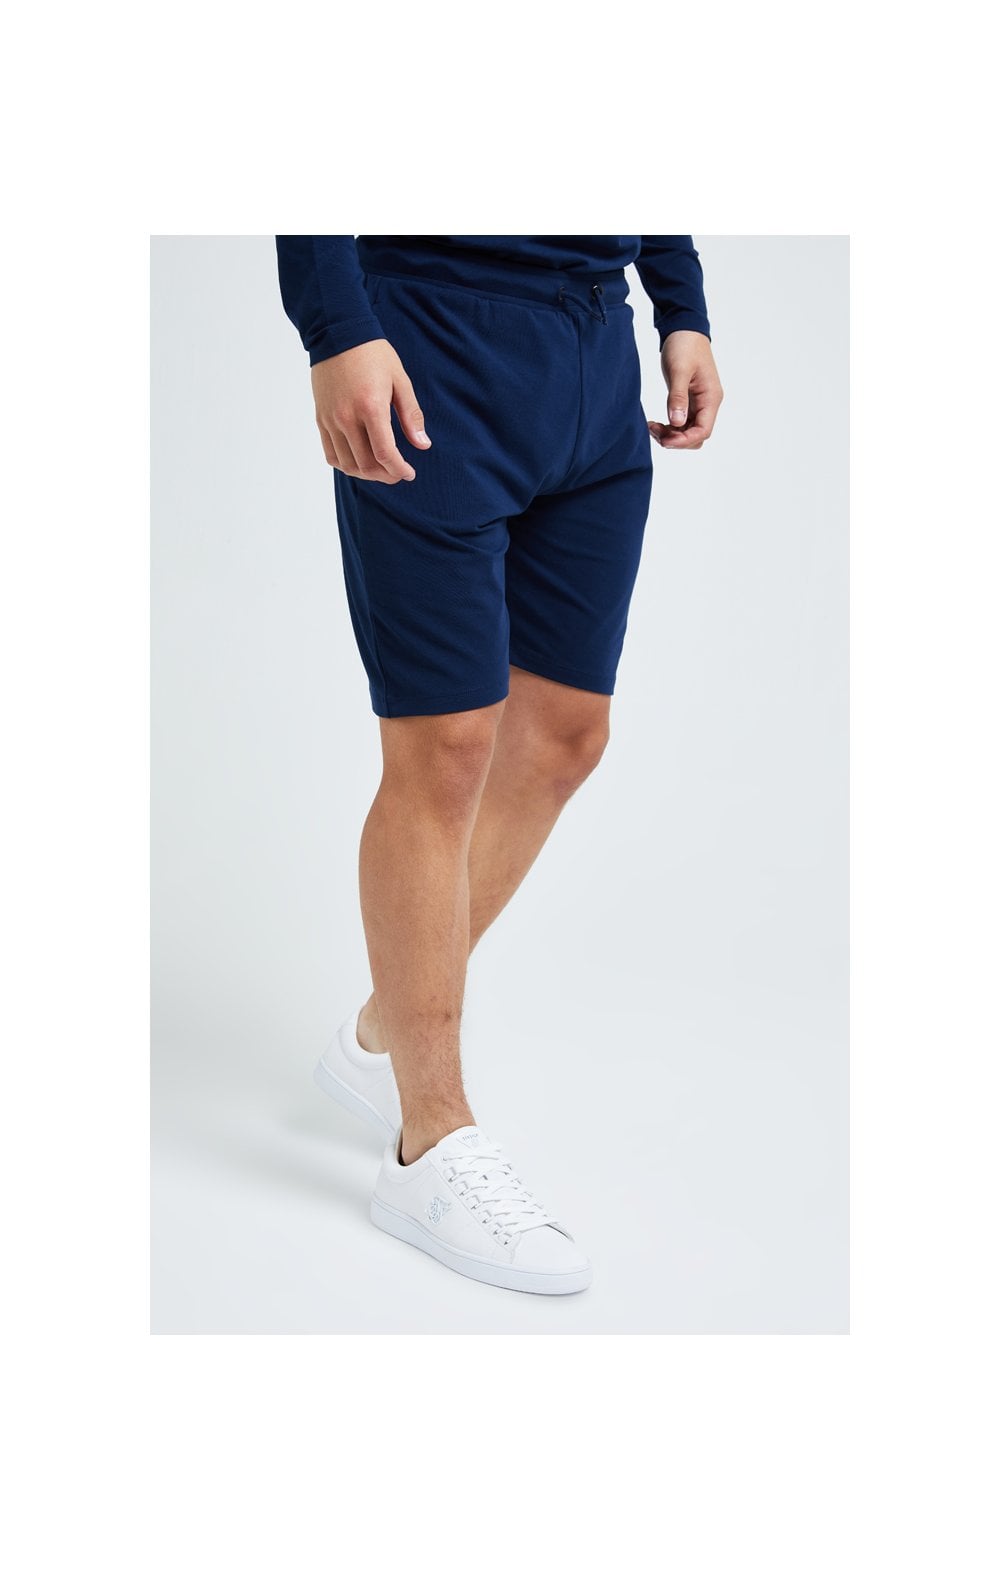 Illusive London Core Jersey Shorts - Navy (2)